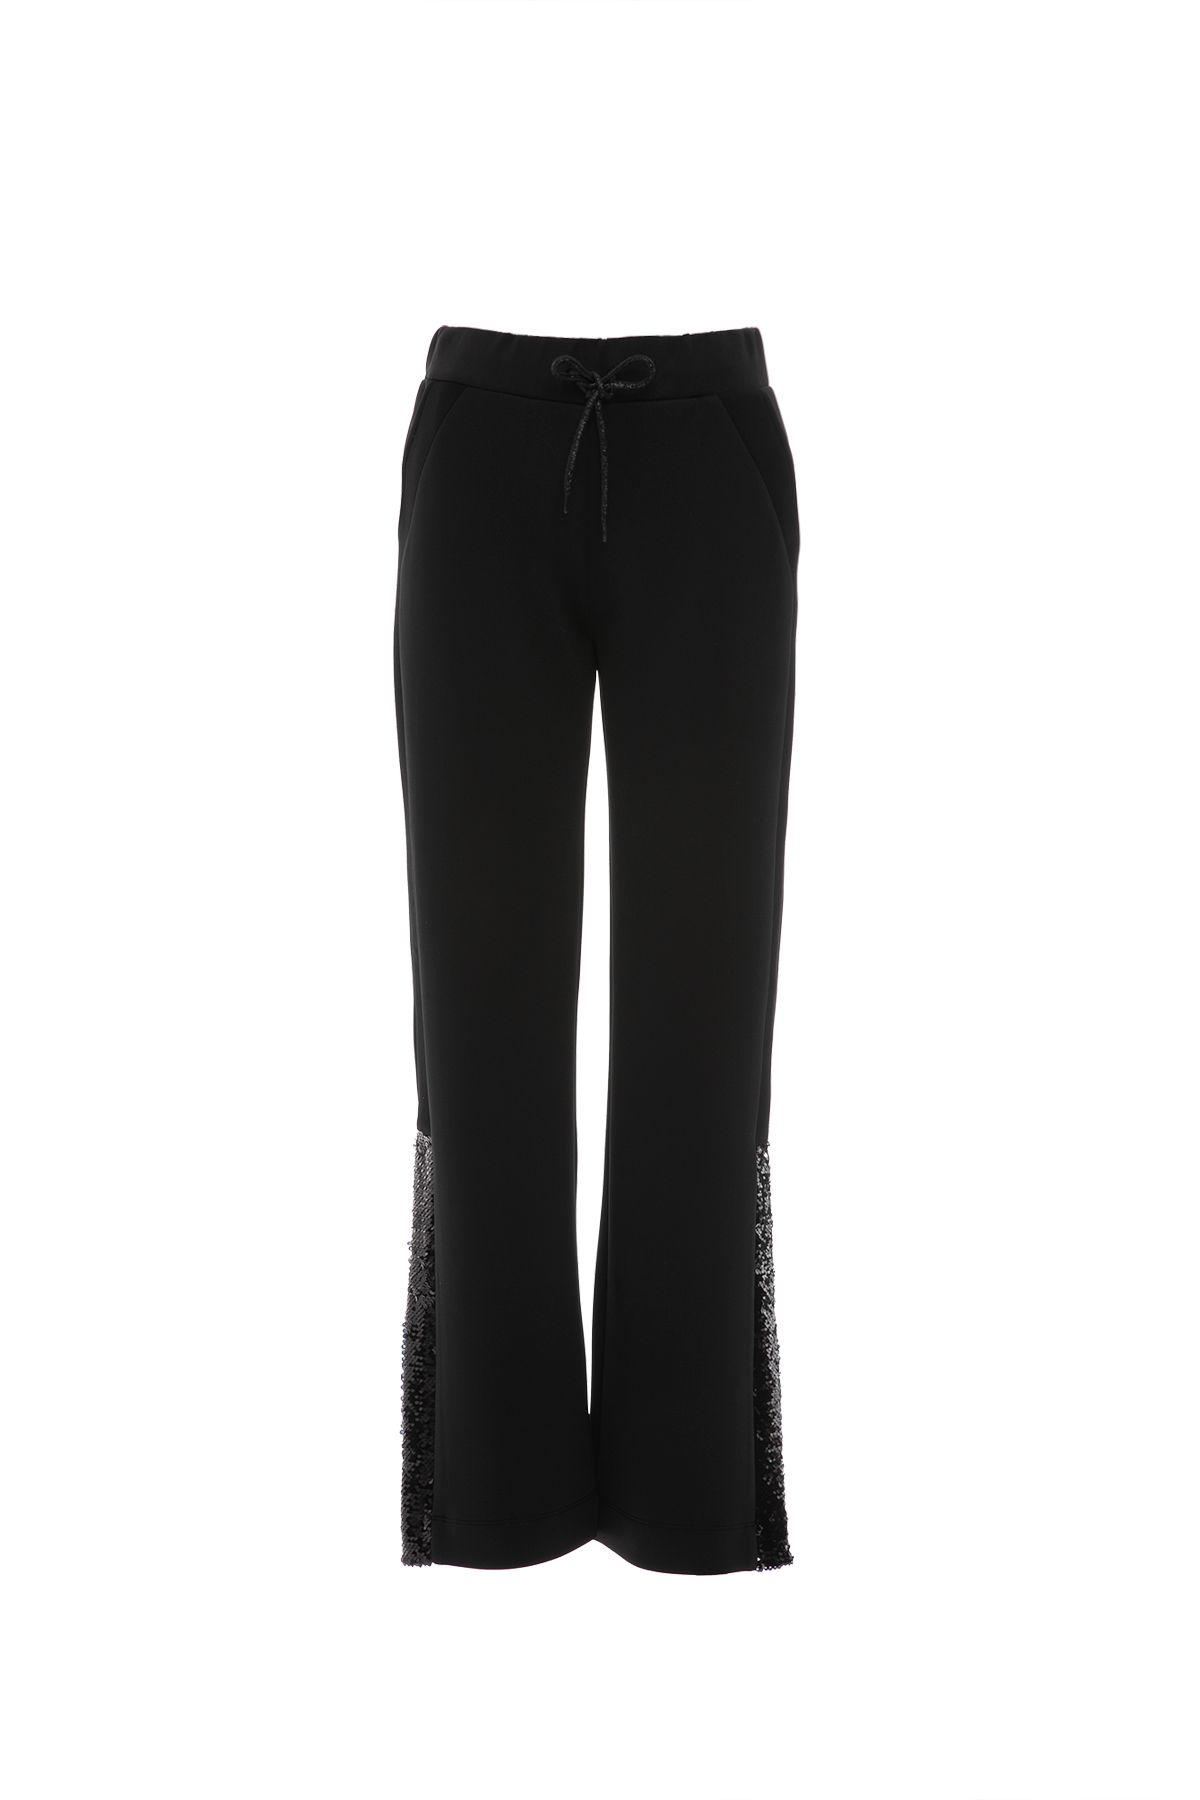 GIZIA Dış Paça Yırtmaçlı Payet Detay Gümüş Bağcıklı Siyah Pantolon